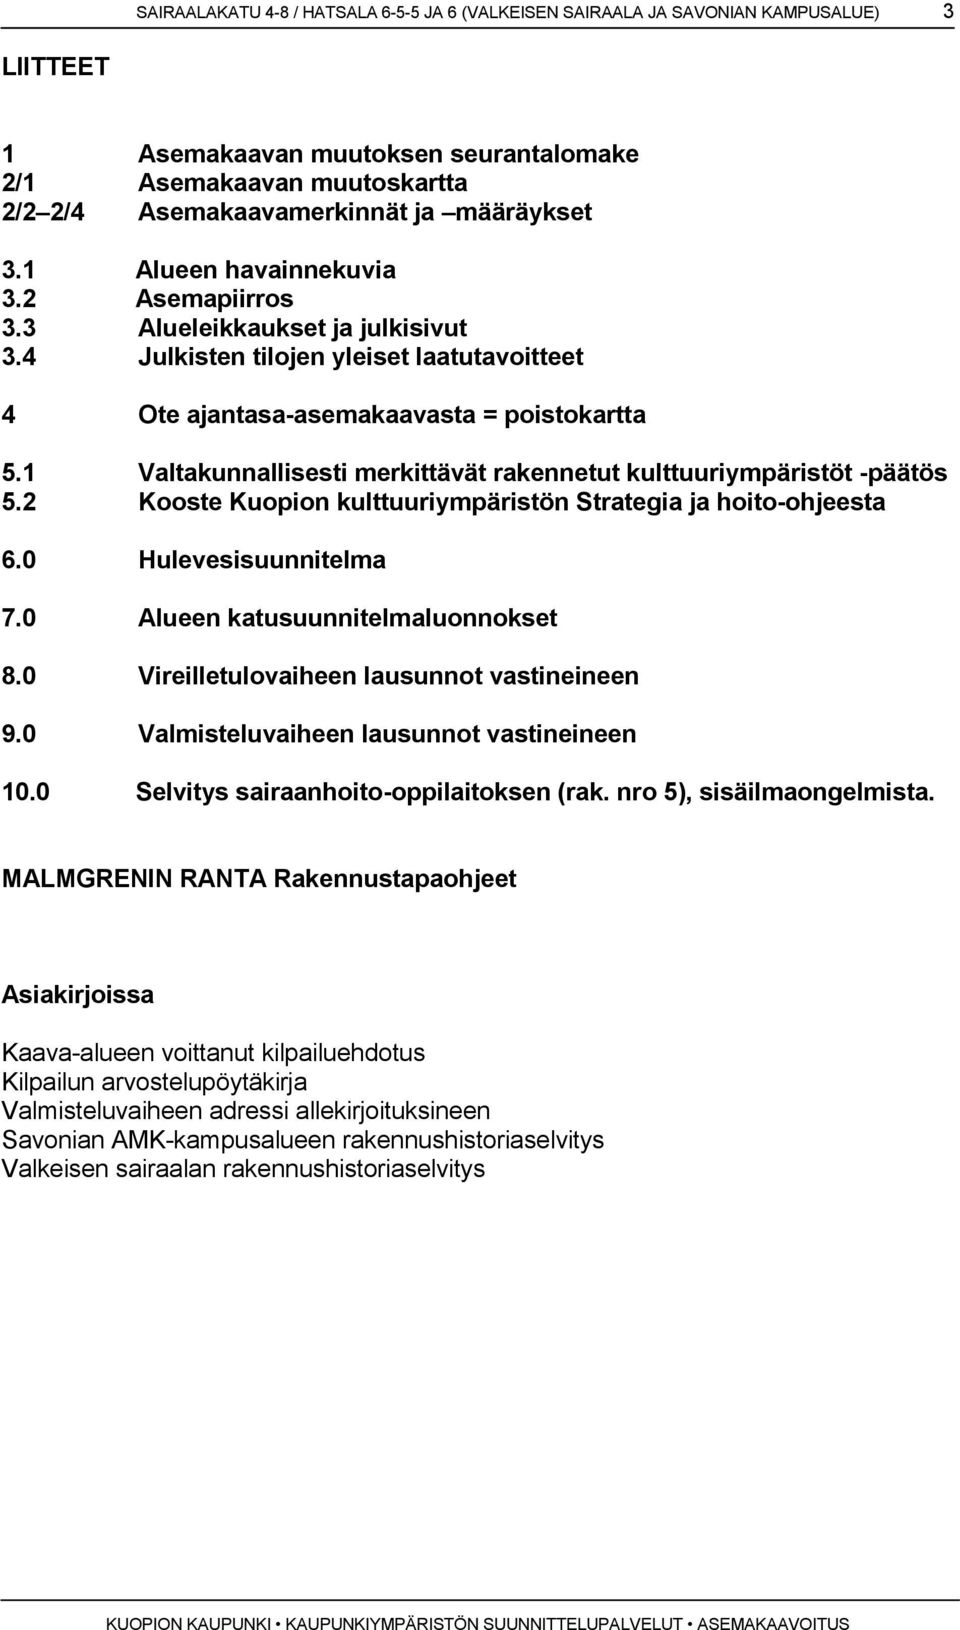 1 Valtakunnallisesti merkittävät rakennetut kulttuuriympäristöt -päätös 5.2 Kooste Kuopion kulttuuriympäristön Strategia ja hoito-ohjeesta 6.0 Hulevesisuunnitelma 7.